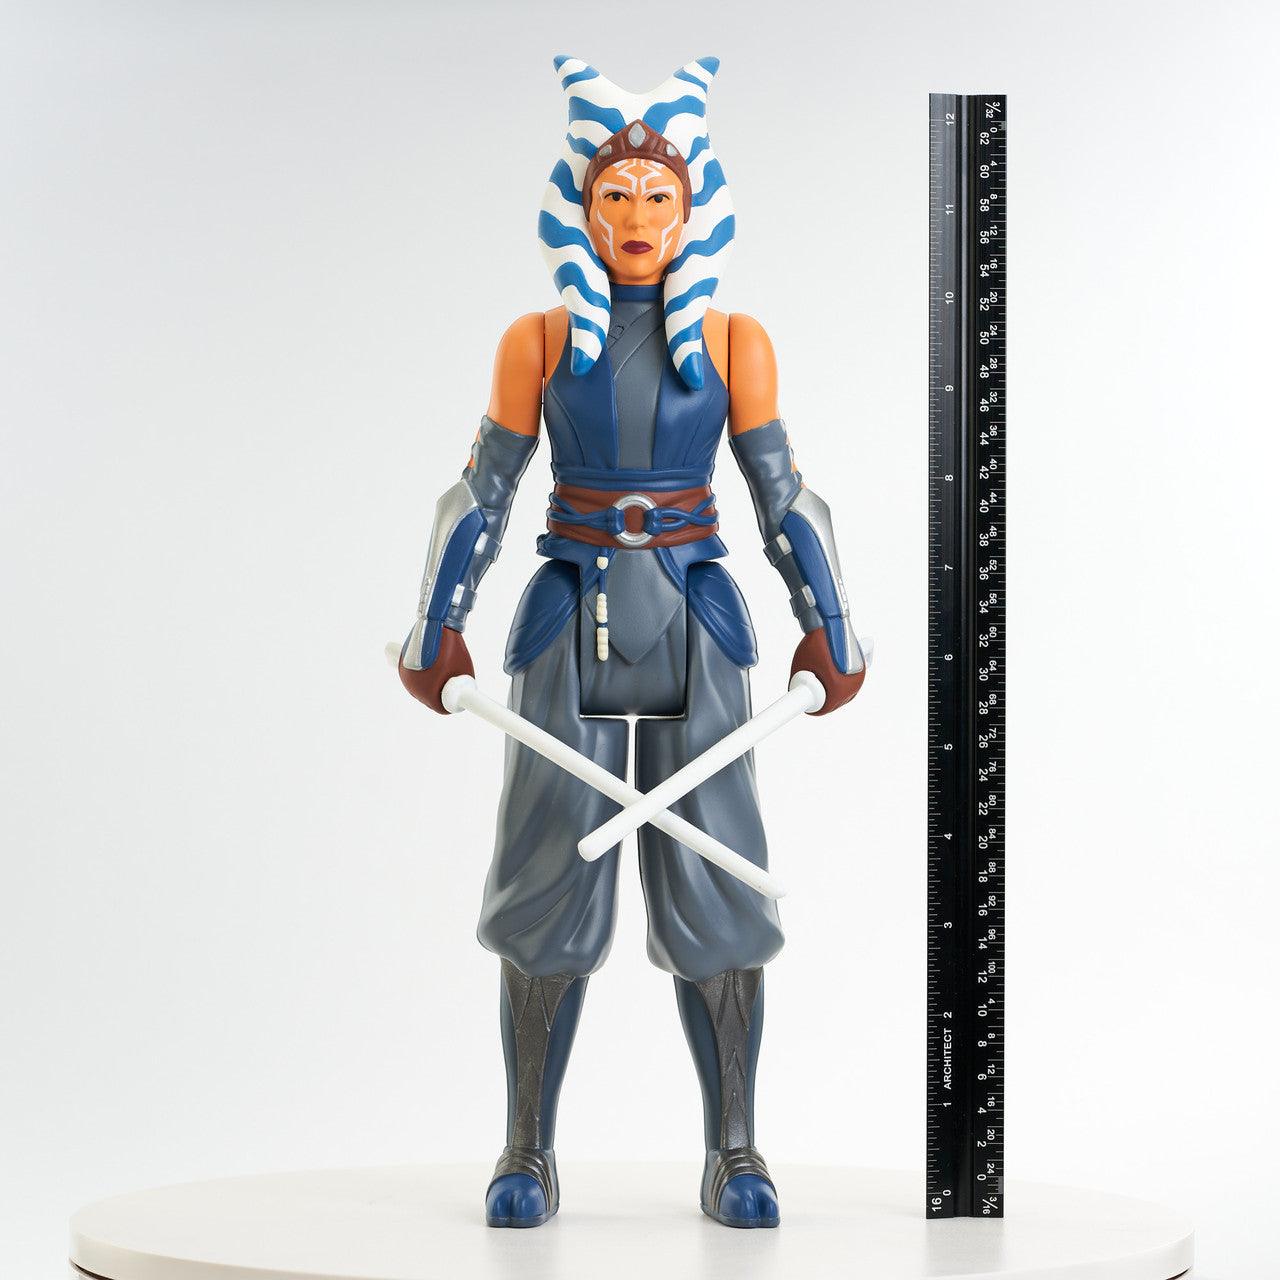 DSTNOV222333 Star Wars: The Mandalorian - Ahsoka Tano Jumbo Figure - Diamond Select Toys - Titan Pop Culture